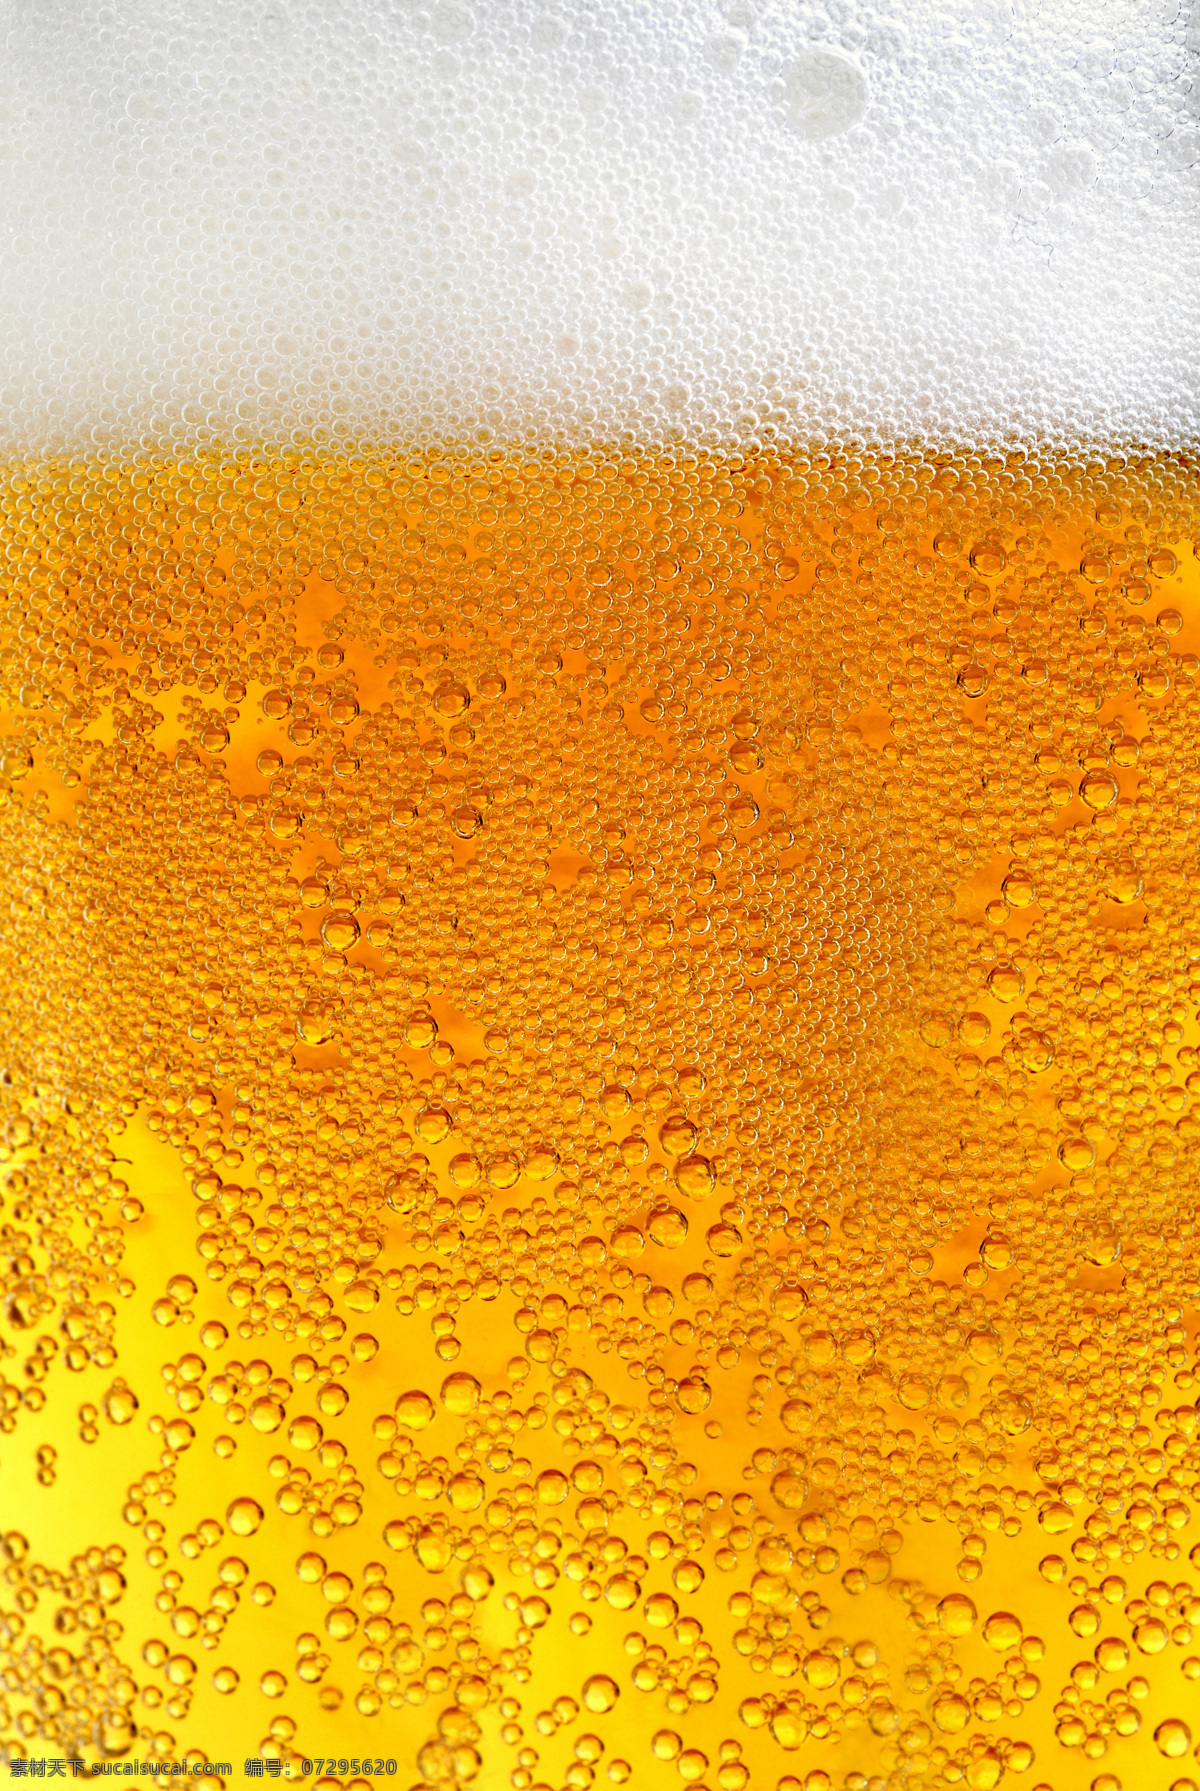 一杯 啤酒 特写 一杯啤酒特写 饮料酒水 餐饮美食 啤酒特写图 啤酒图 实用图片 精美图片 印刷适用 高清图片 创意图片 酒类图片